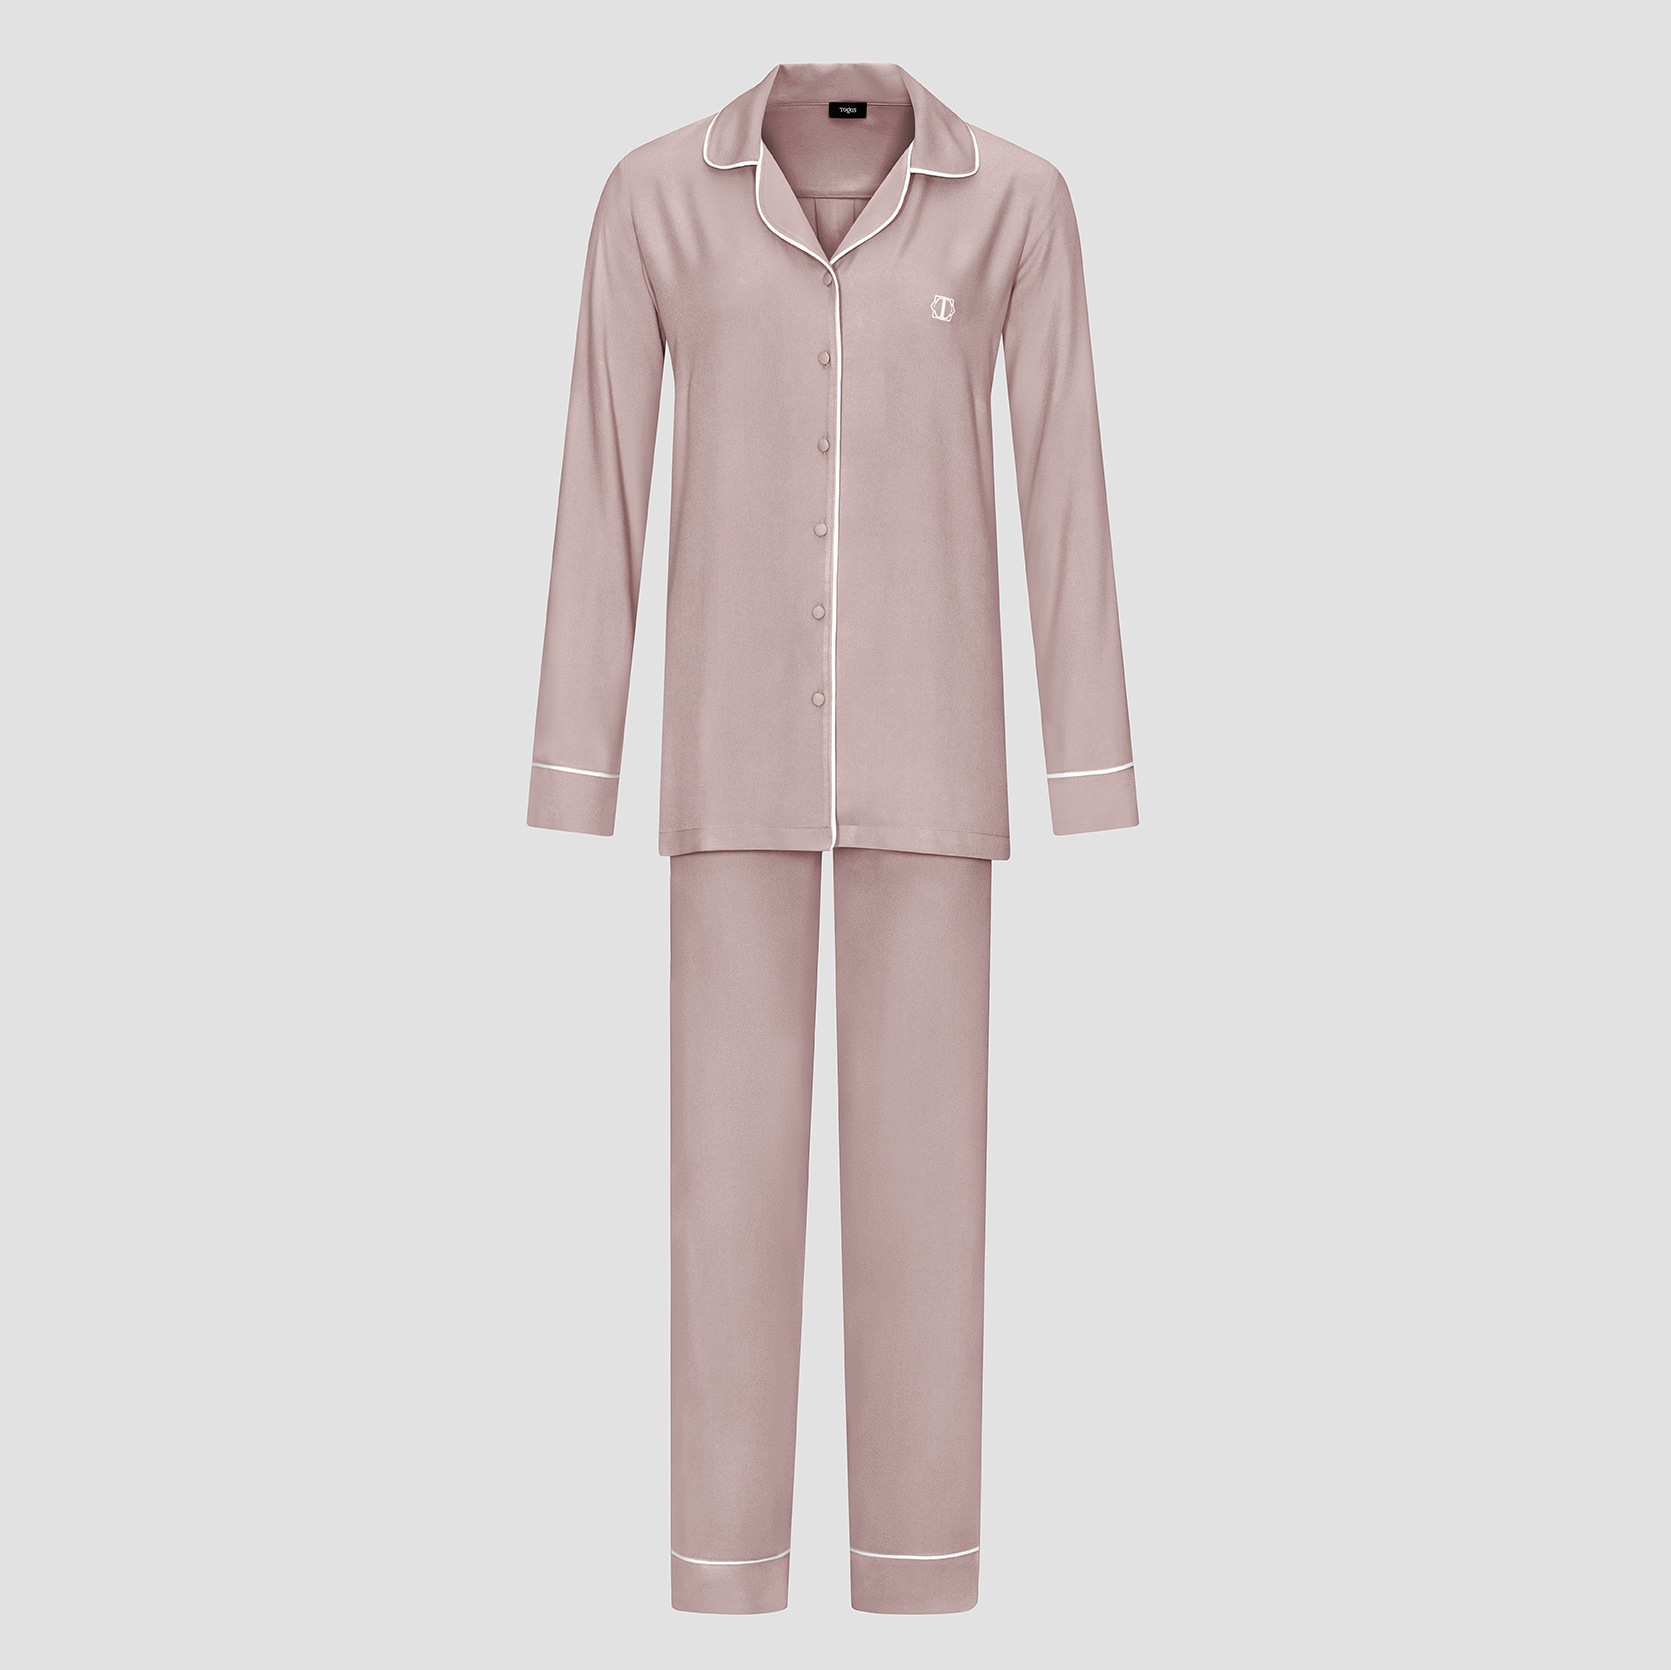 Пижама женская Togas Рамель розовая 2 предмета пижама джемпер брюки